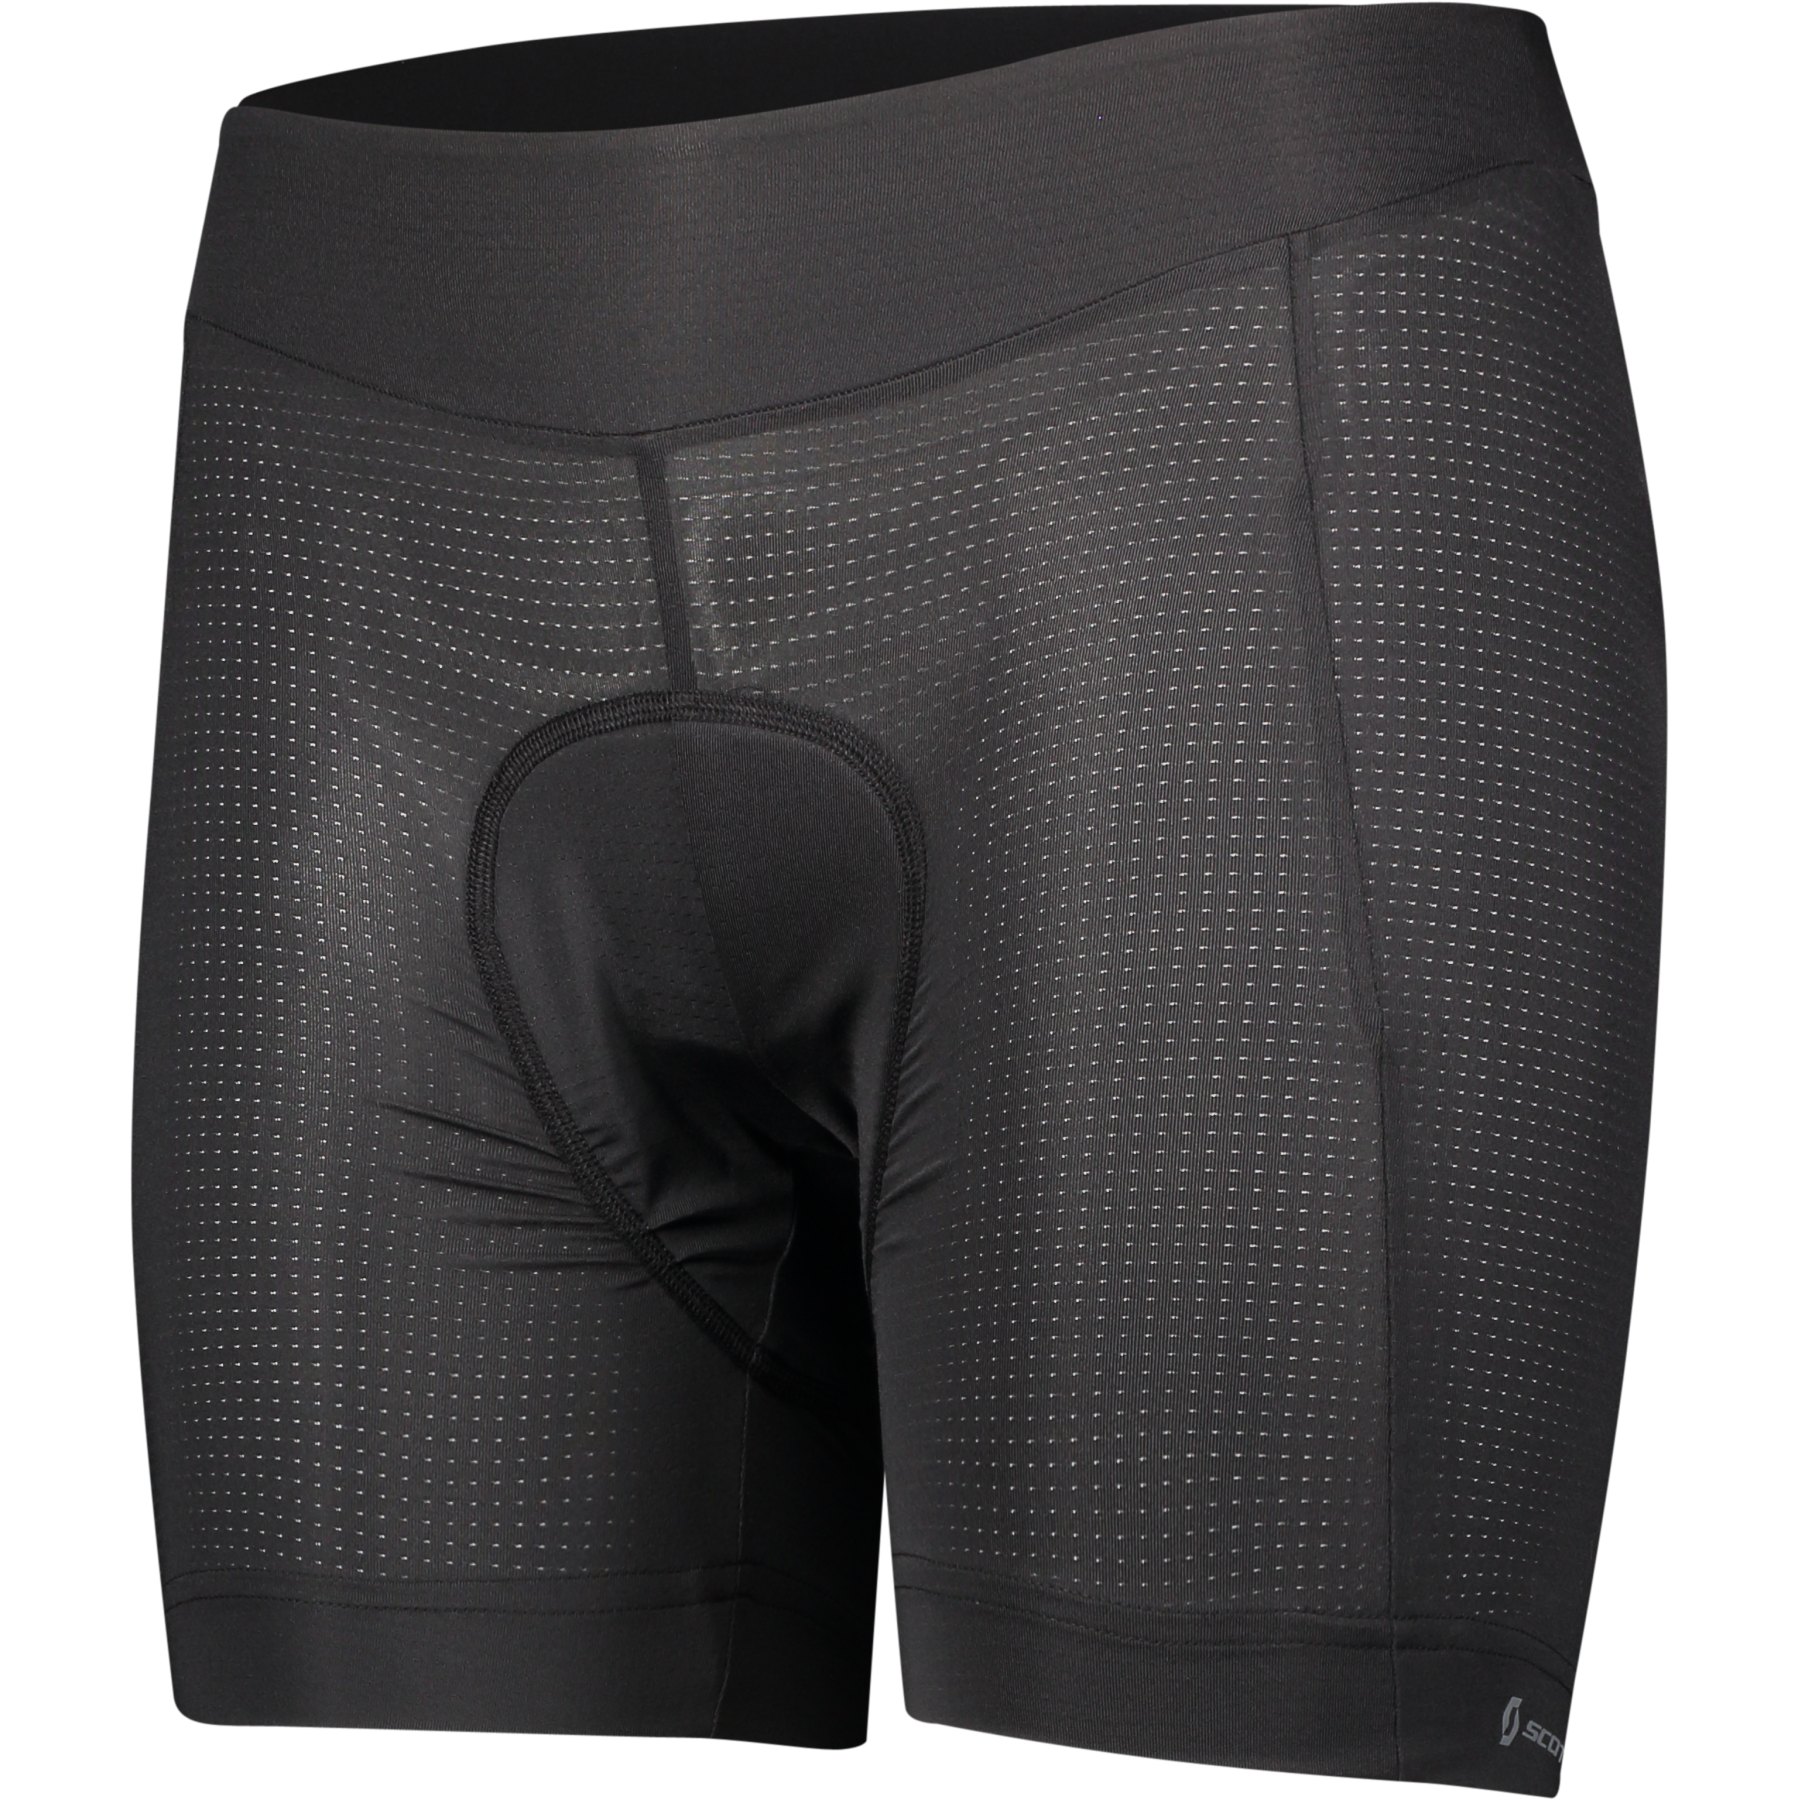 Produktbild von SCOTT Trail Underwear + Damen Fahrrad-Unterhose - schwarz